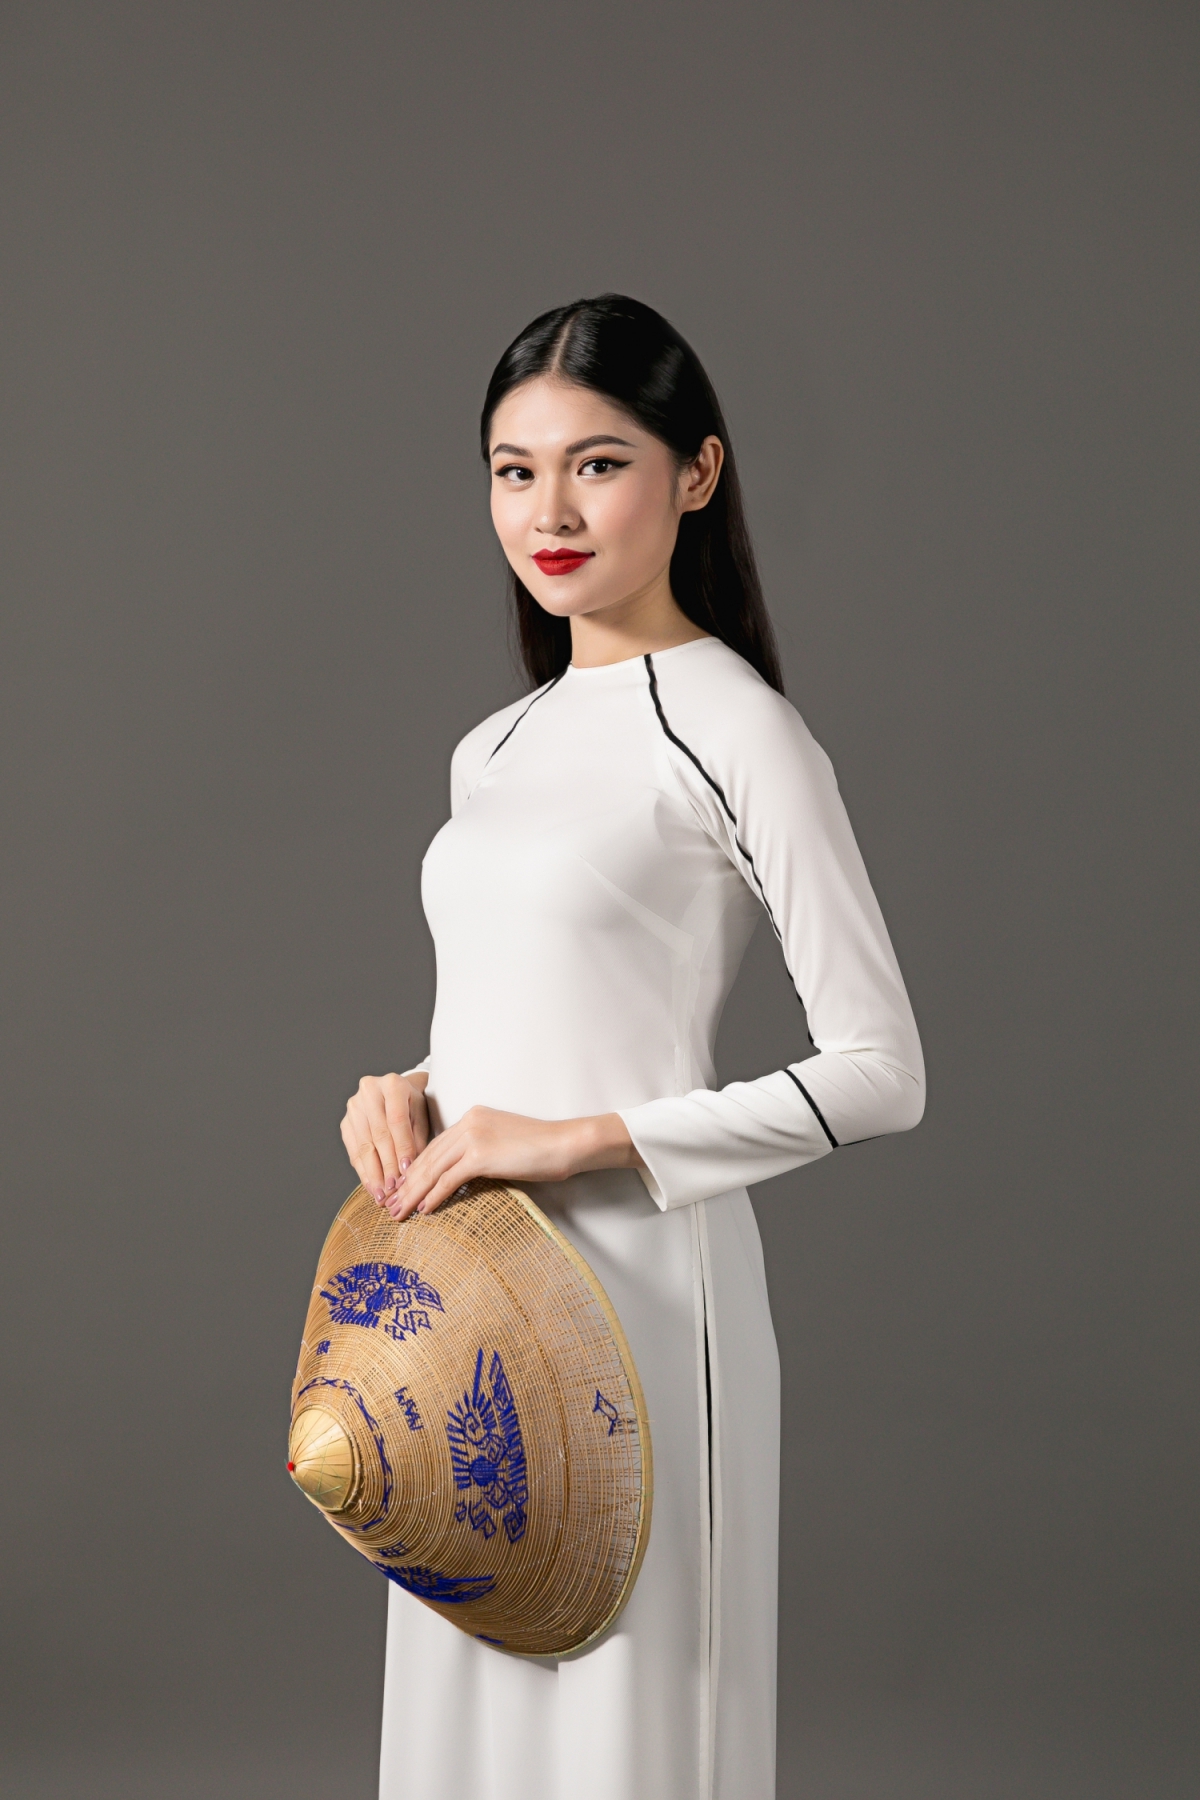 Cận cảnh vẻ đẹp ‘hút hồn’của Thùy Dung tại Miss International 2017